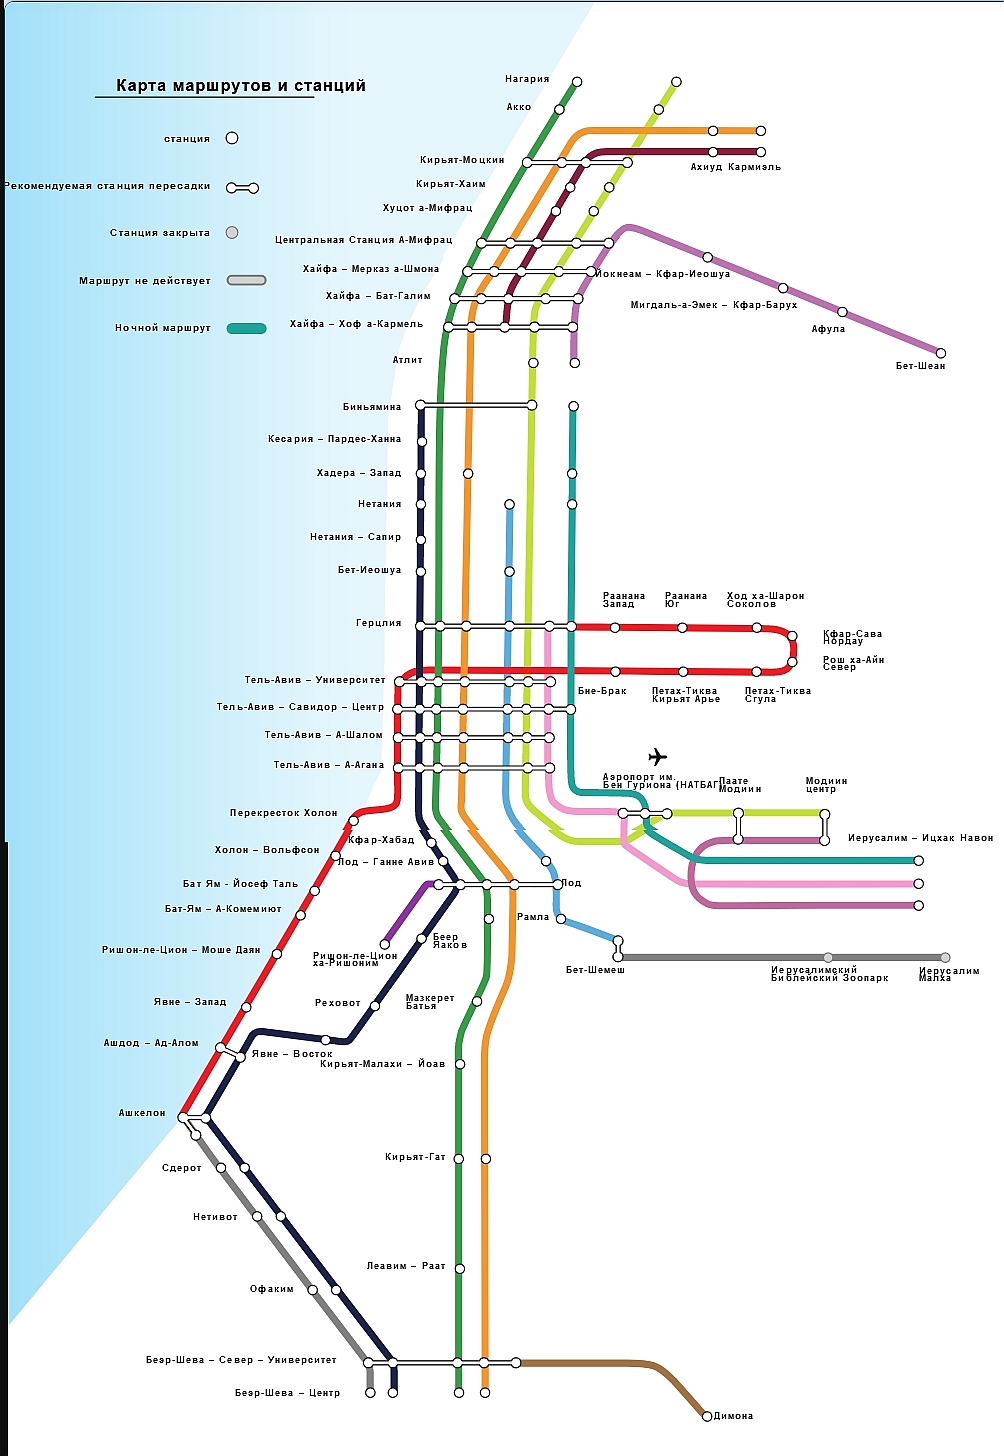 Текущая карта железной дороги Израиля